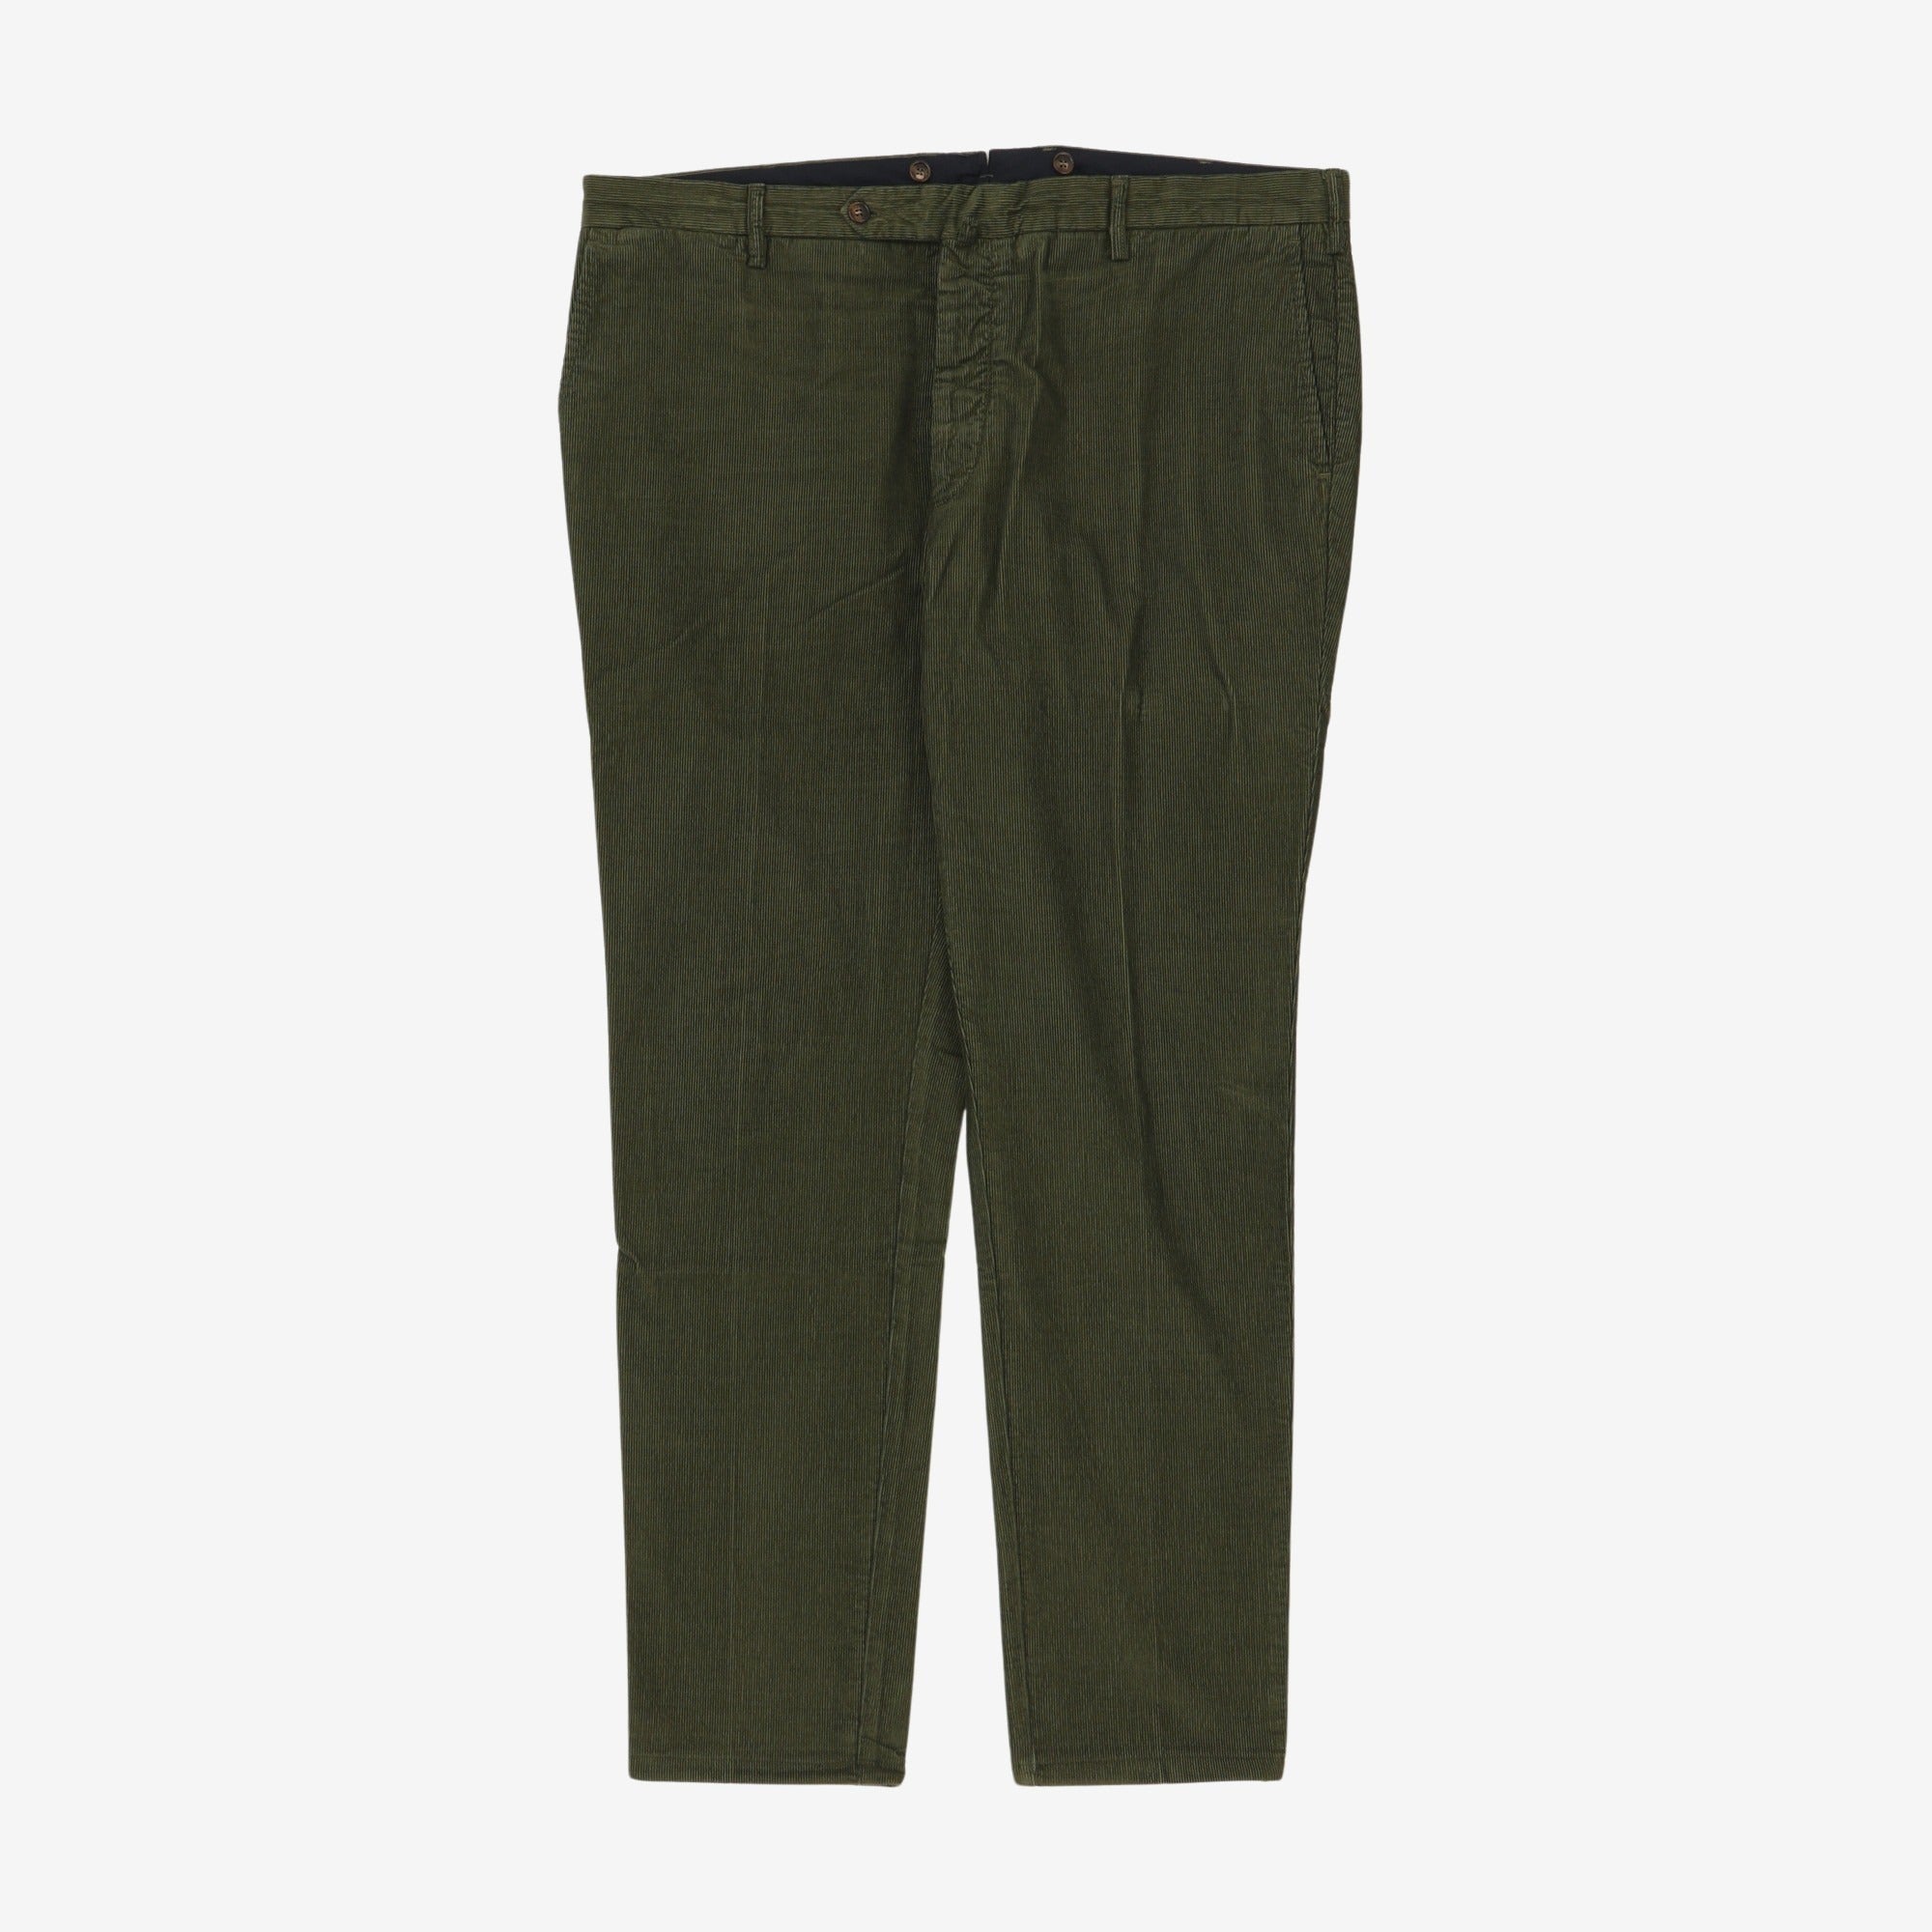 Corduroy Trousers (42W x 32.5L)